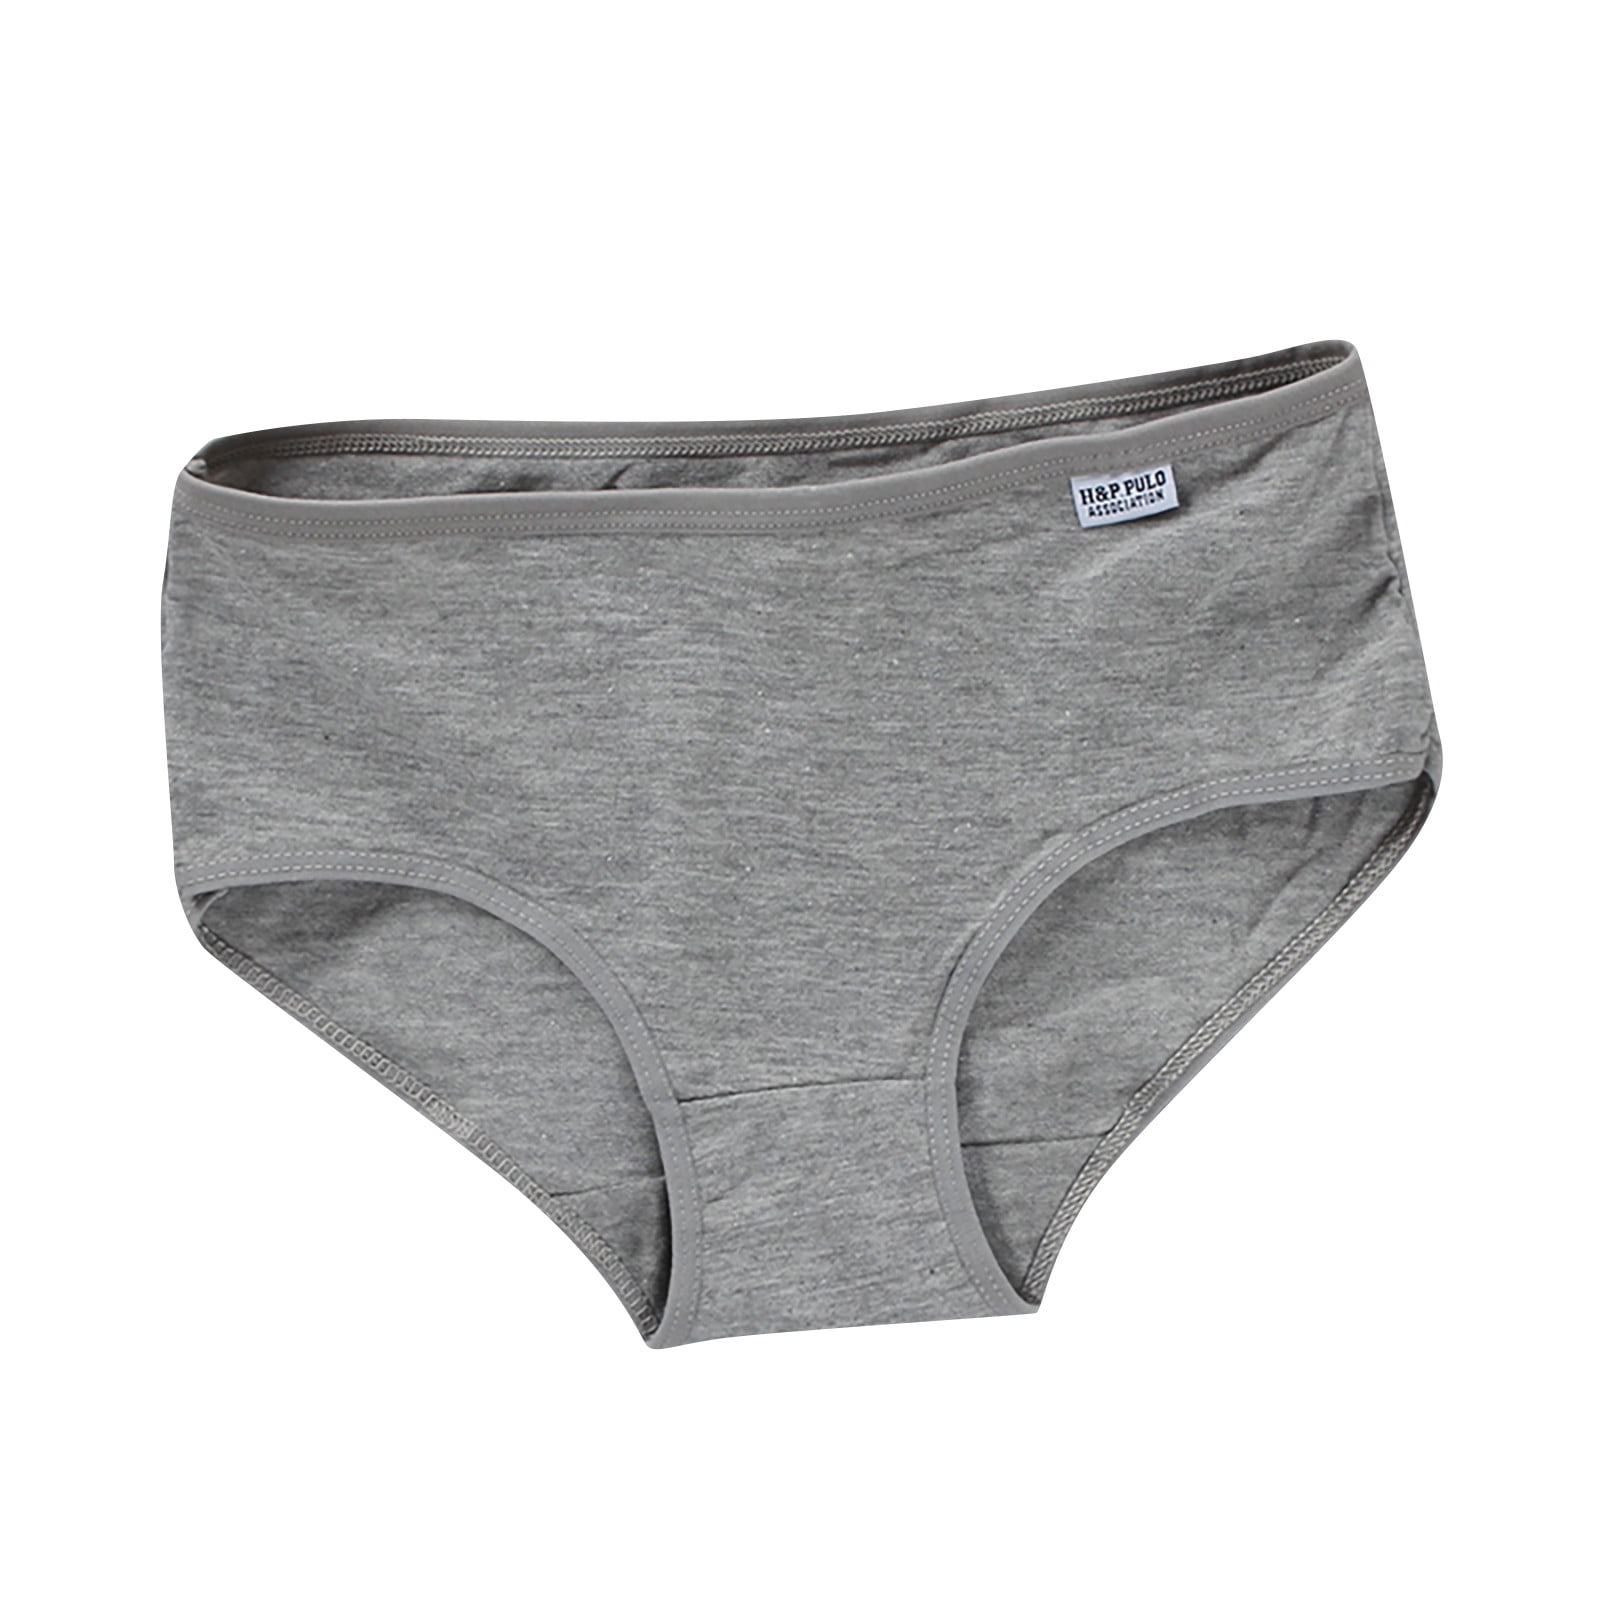 Hesxuno Underwear for Girls Girls Underwear Pure Cotton Briefs Solid ...